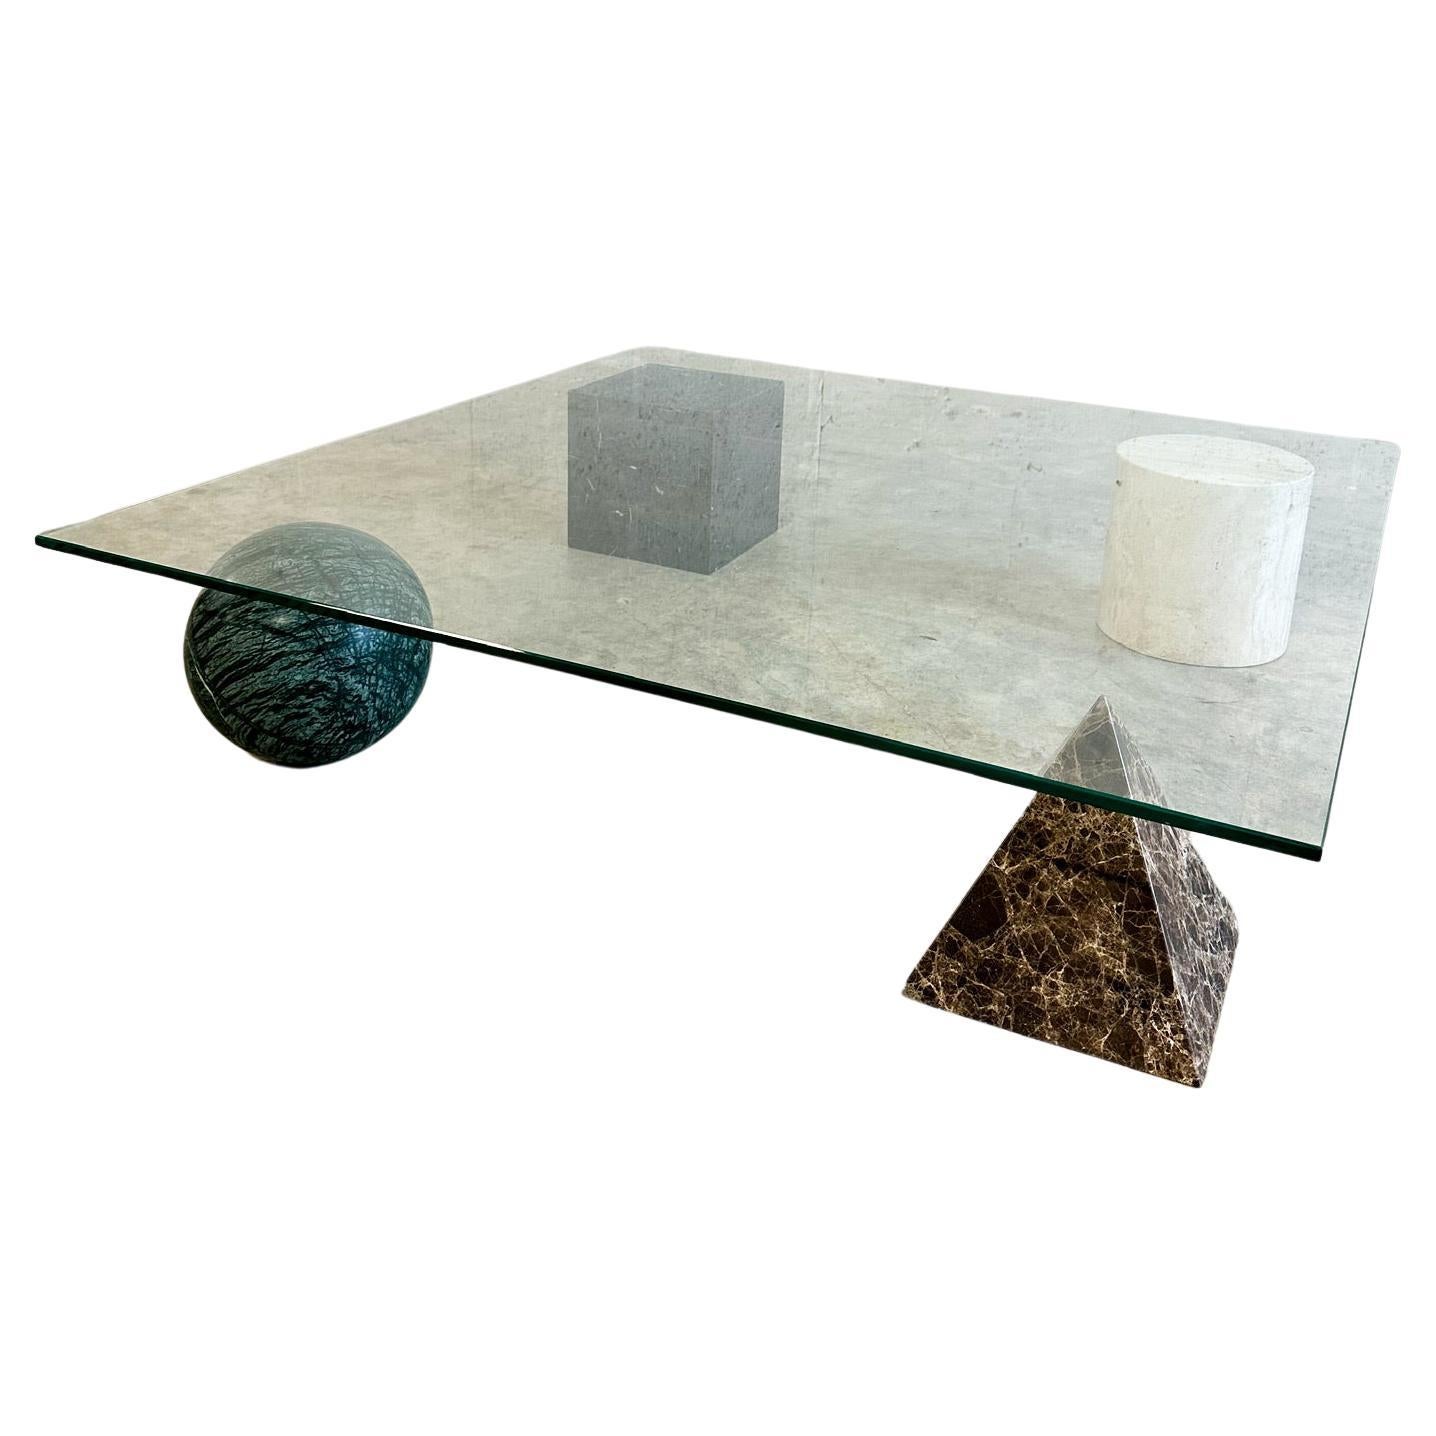 Metafora Coffee Table by Lella & Massimo Vignelli For Sale